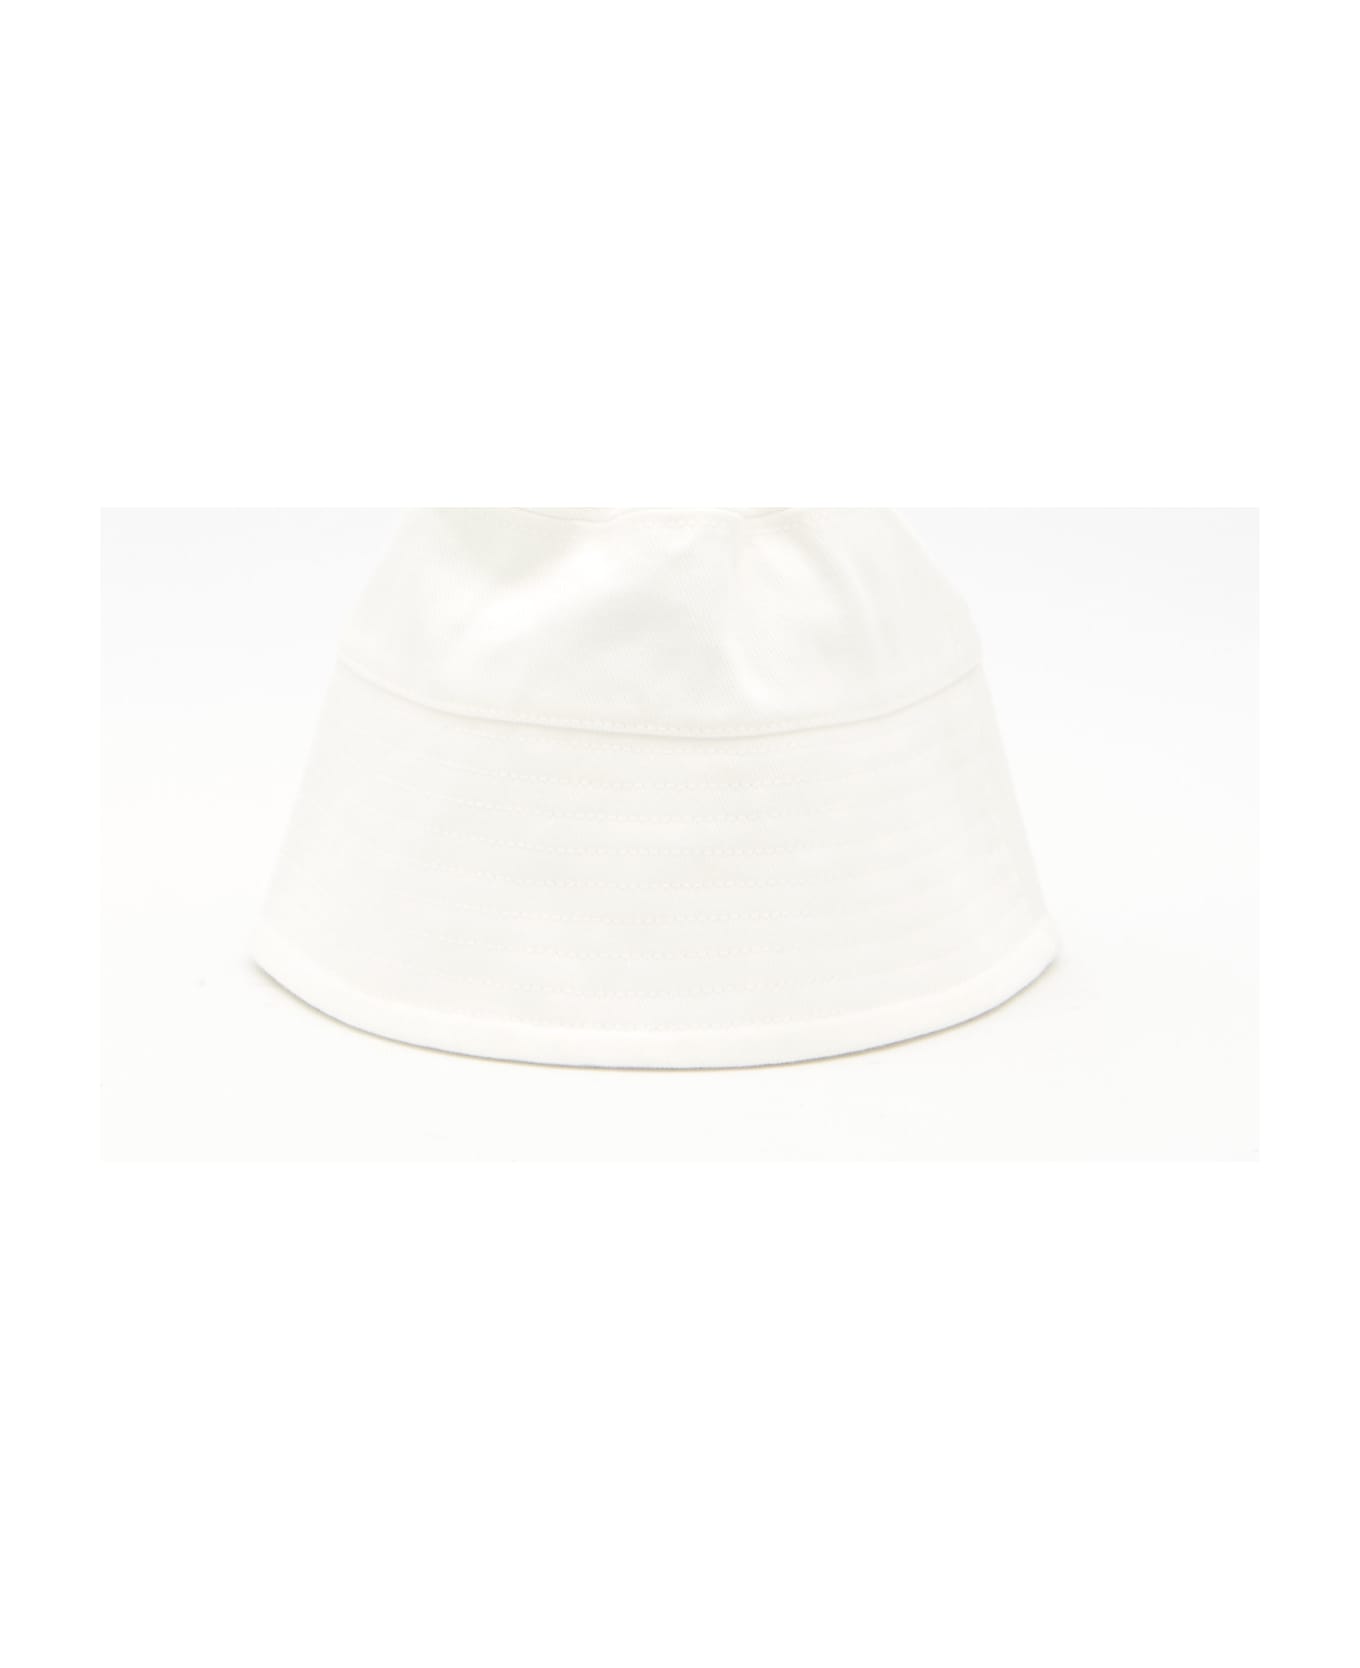 Patou Bucket Hat - WHITE